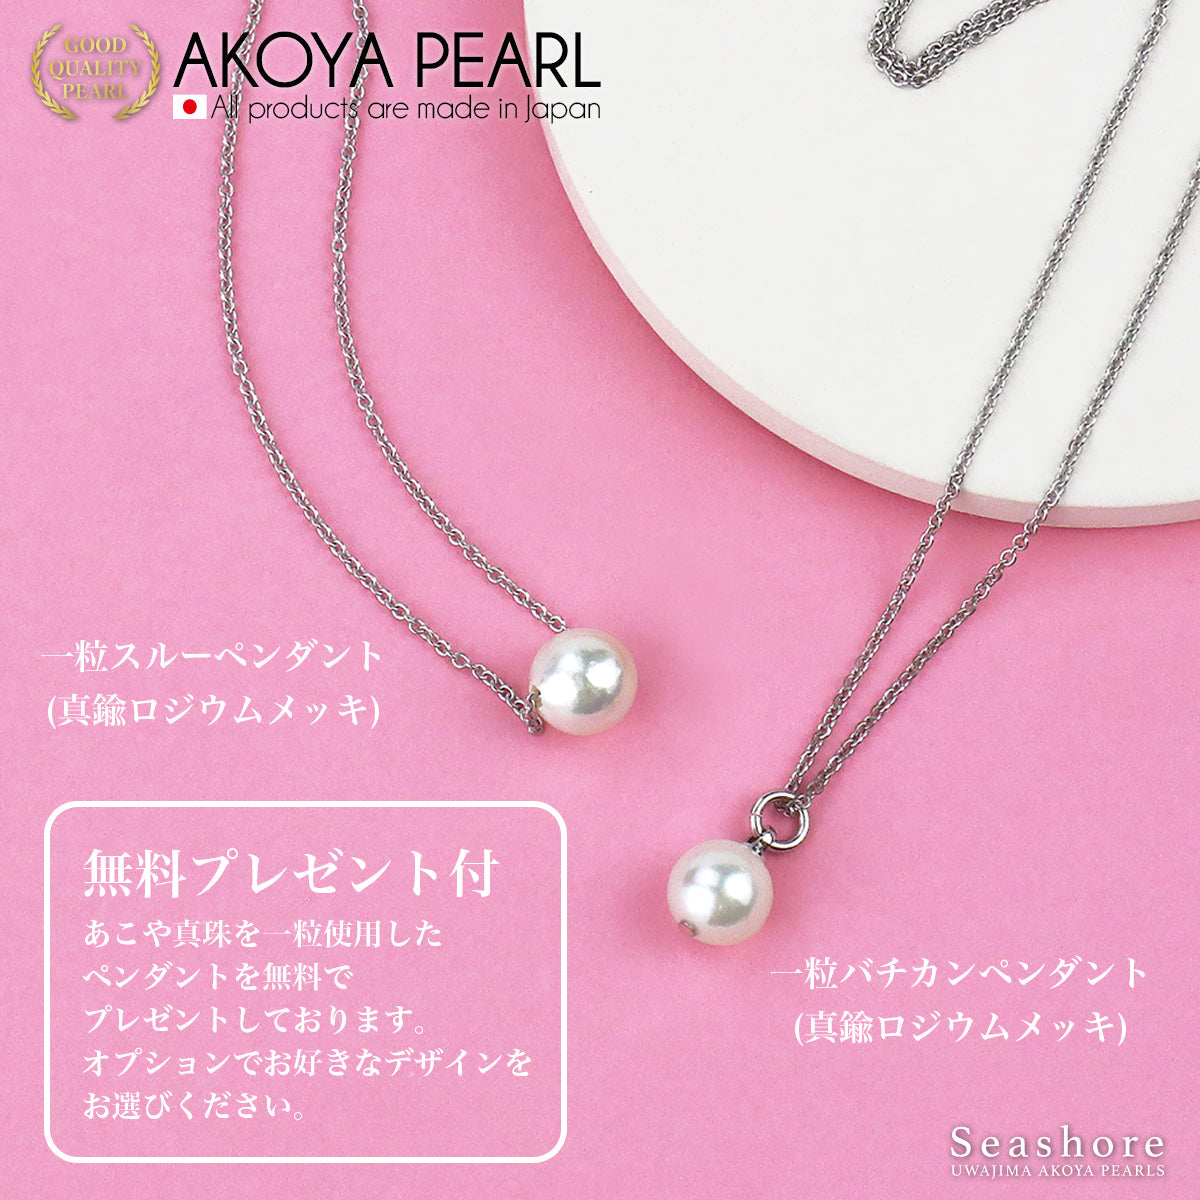 婴儿珍珠手链 白色 [5.0-5.5mm] SV925 Akoya 珍珠 (4078)